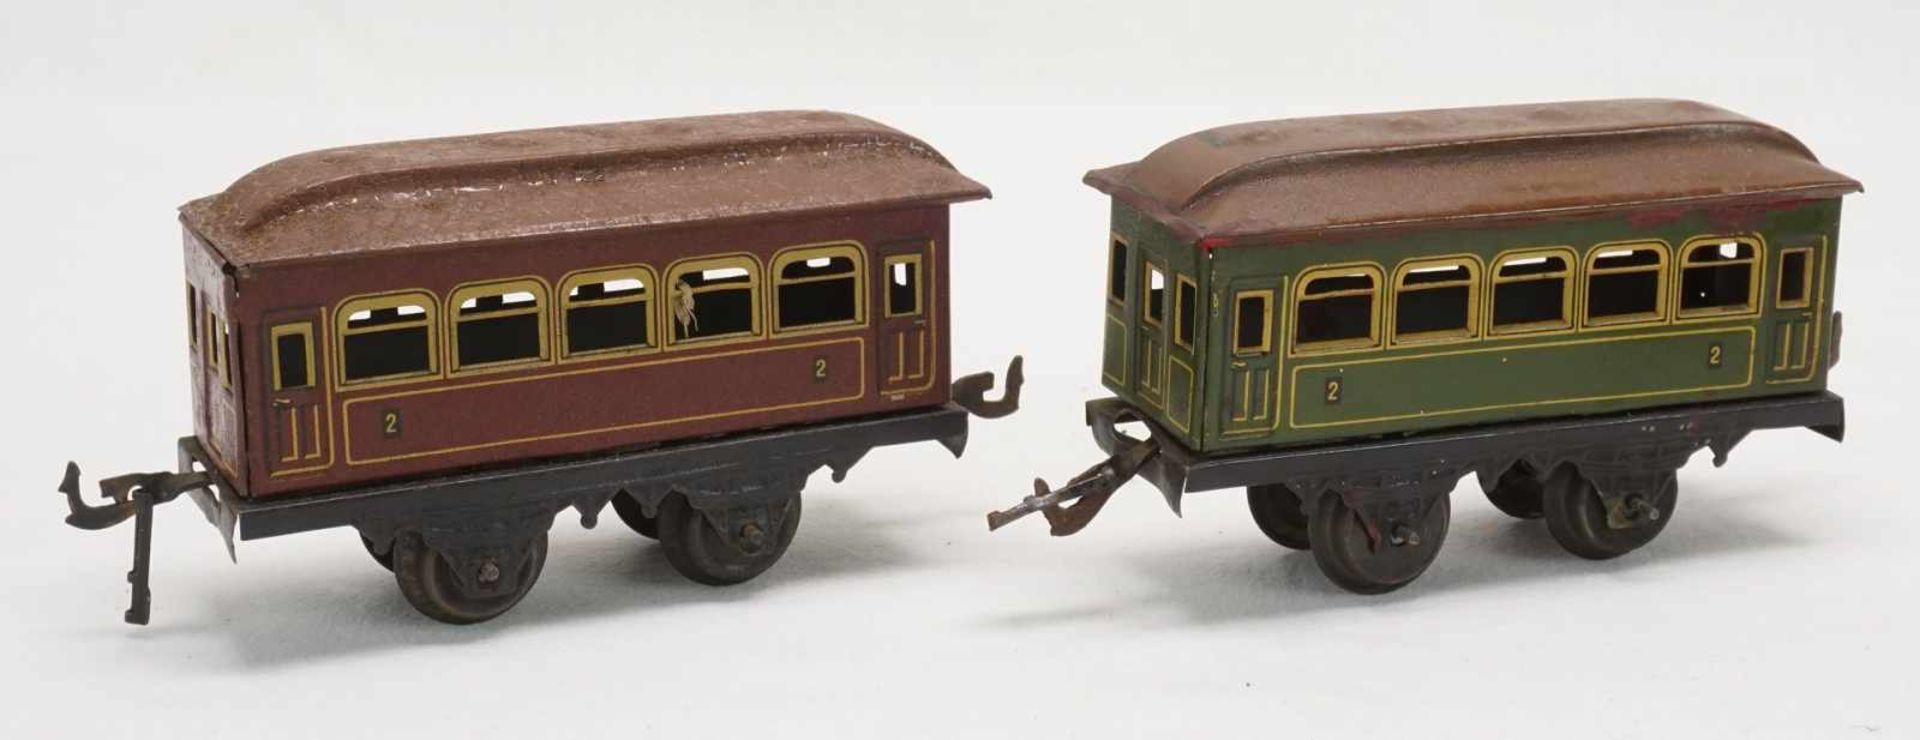 Eisenbahnanlage mit Lok und Wagen, Spur 0, um 1930Blech lithografiert, elektrische Schlepptenderlok, - Image 4 of 8